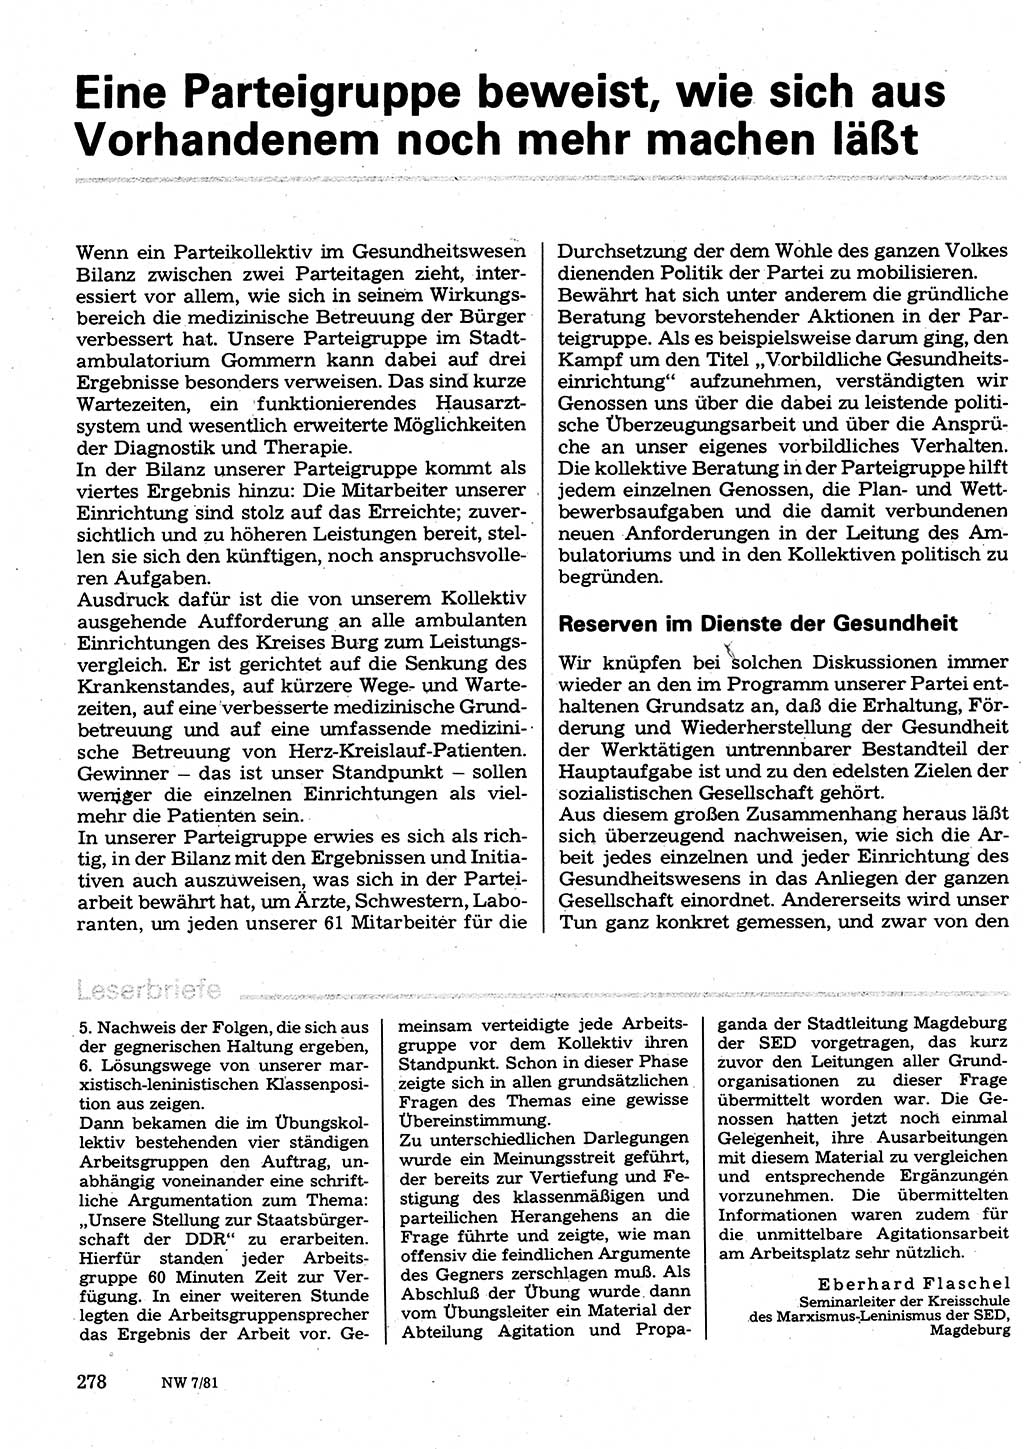 Neuer Weg (NW), Organ des Zentralkomitees (ZK) der SED (Sozialistische Einheitspartei Deutschlands) für Fragen des Parteilebens, 36. Jahrgang [Deutsche Demokratische Republik (DDR)] 1981, Seite 278 (NW ZK SED DDR 1981, S. 278)